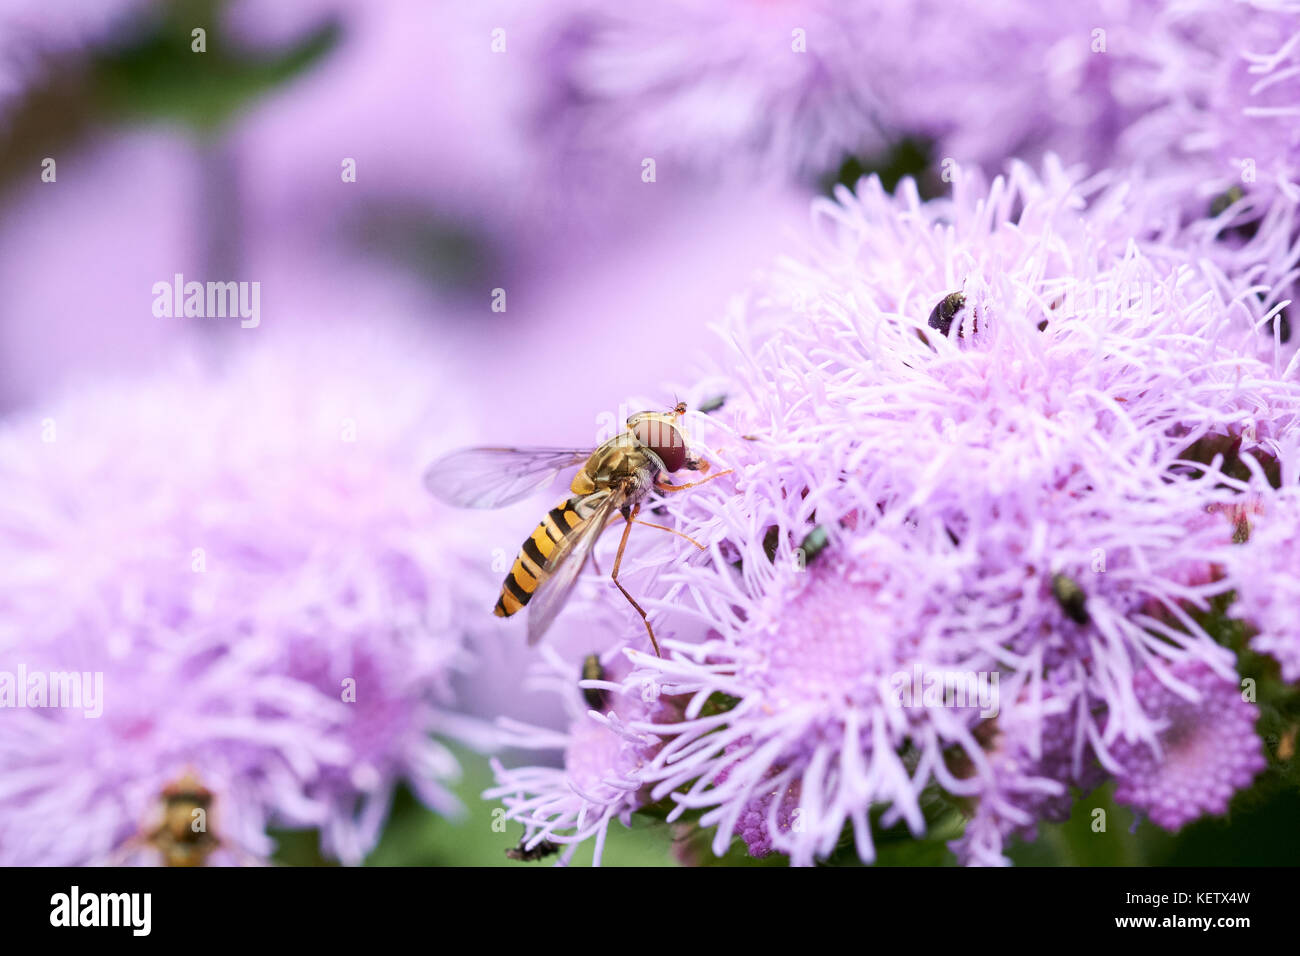 Gemeinsame Hover-fly (Syrphus ribesii) ernähren sich von Nektar aus dem Sommer lila Blüten eines Aeschynanthus (A. Jack Diamond Blau F1) Garten Pflanze, Großbritannien. Stockfoto